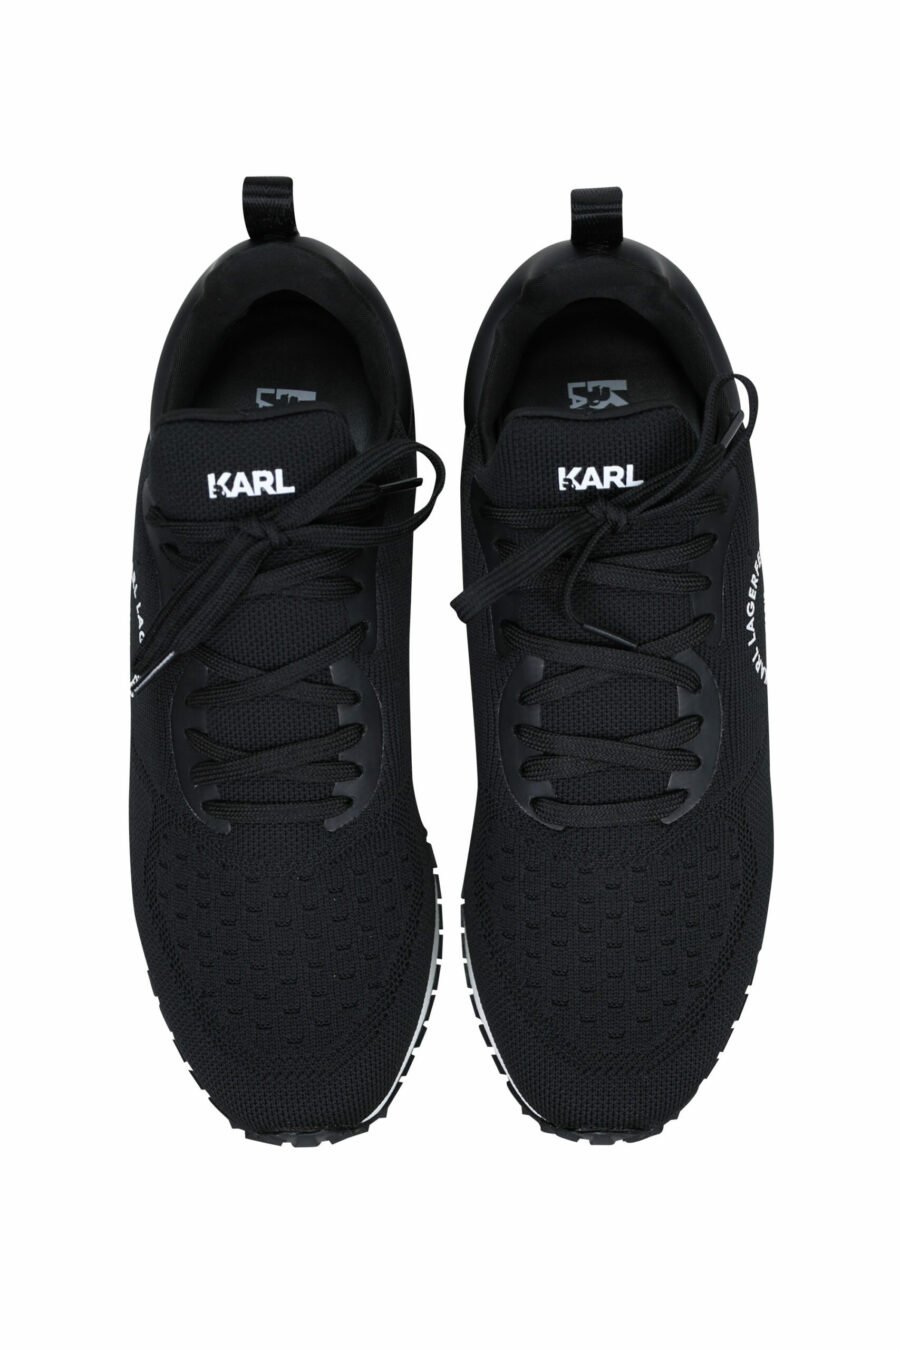 Chaussures "velocitor" noires avec logo "rue st guillaume" blanc - 5059529326370 4 échelles